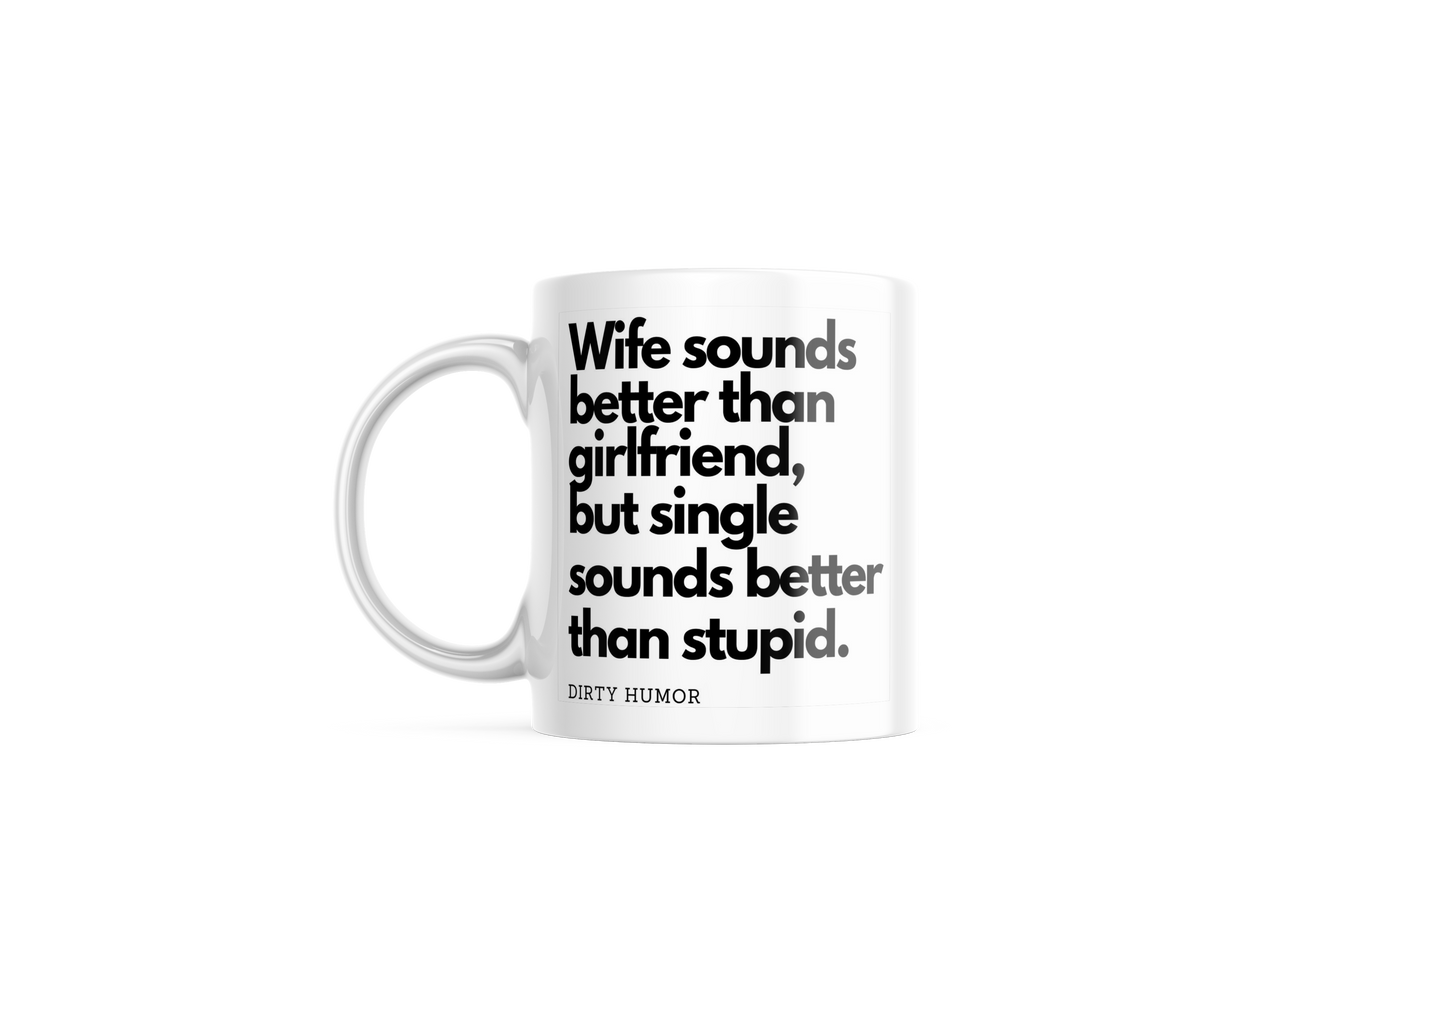 Wife sounds better than girlfriend, but single sounds better than stupid.